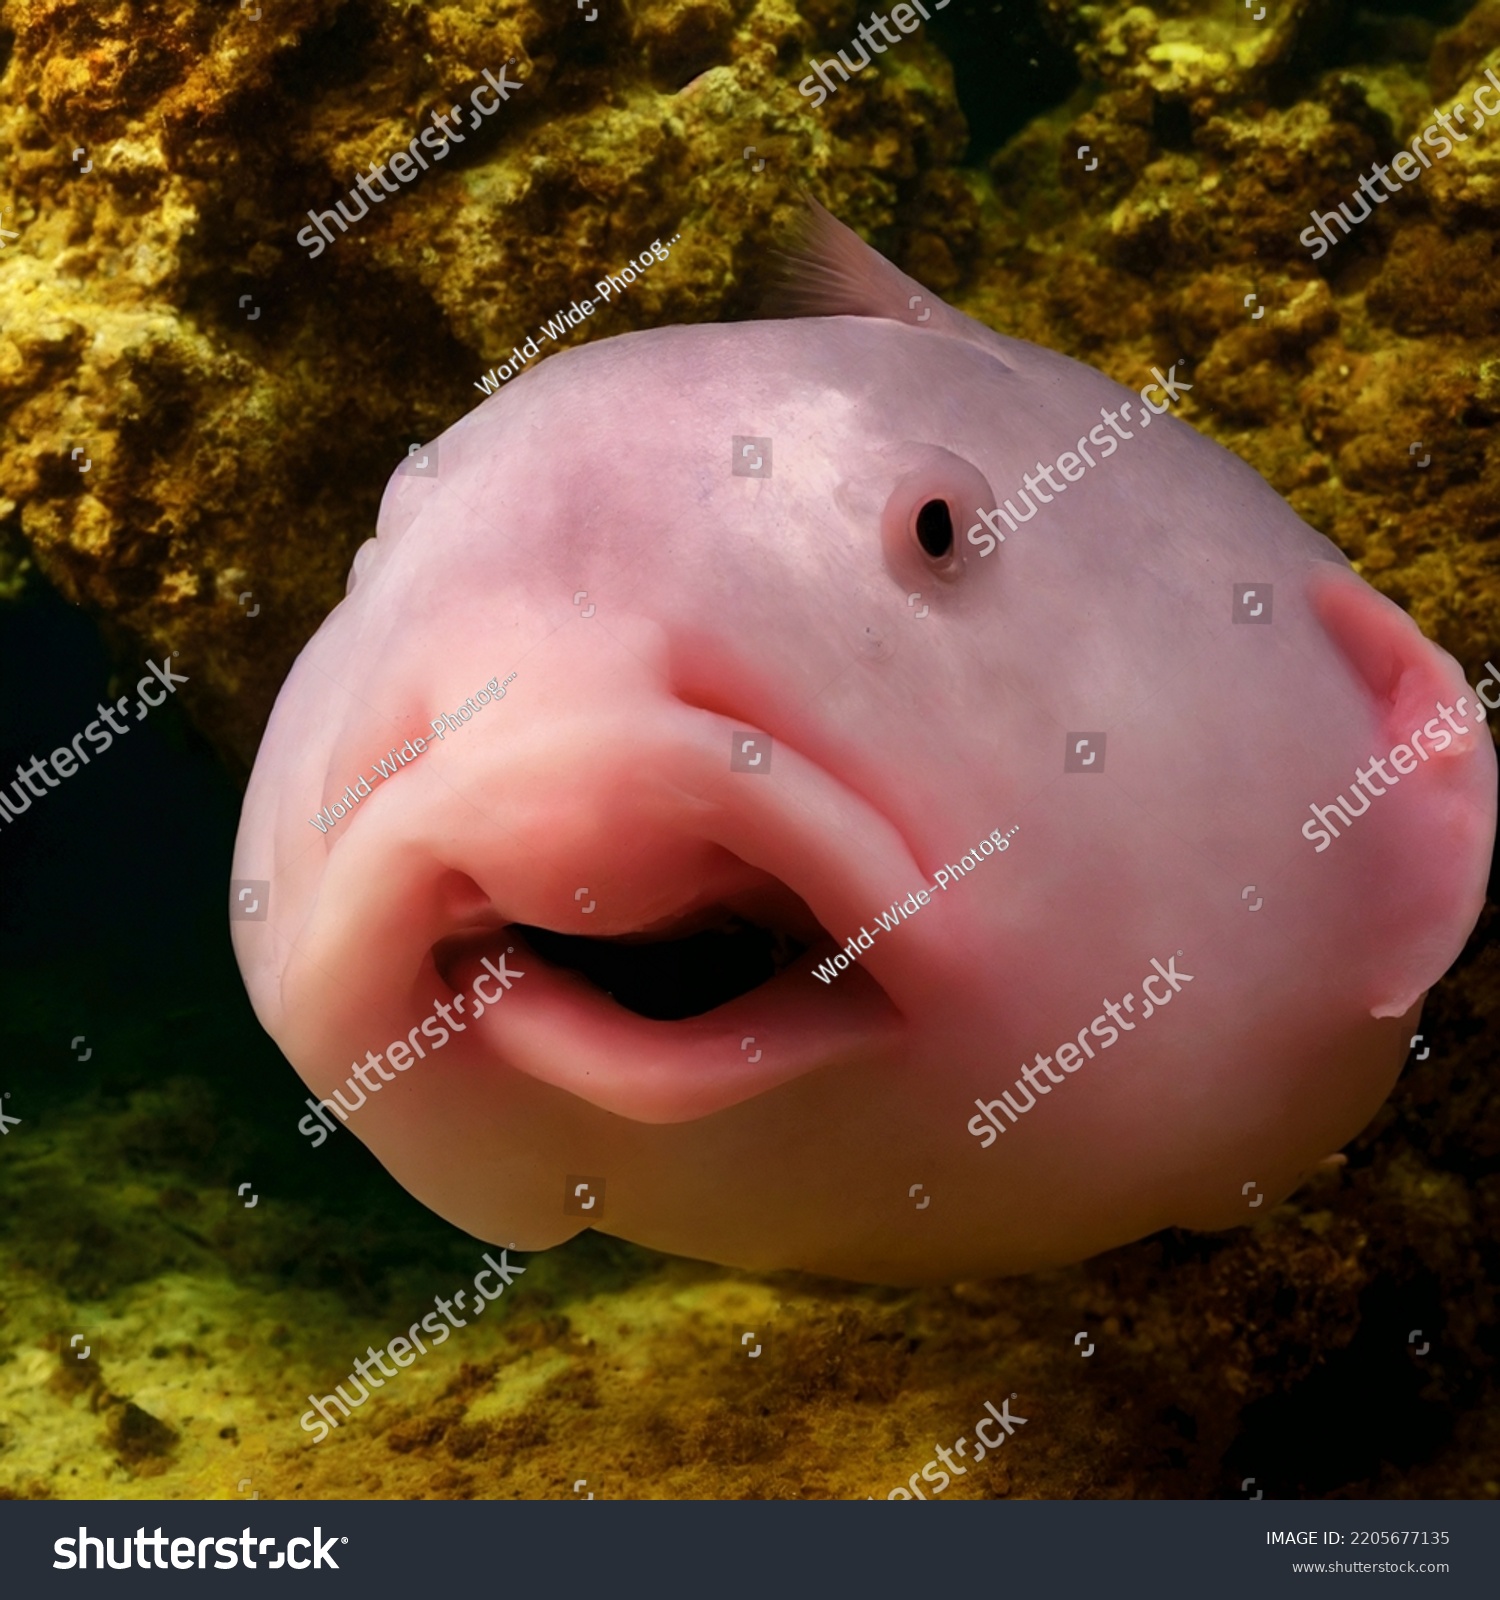 Photo of a Blobfish - World's ugliest fish #2205677135